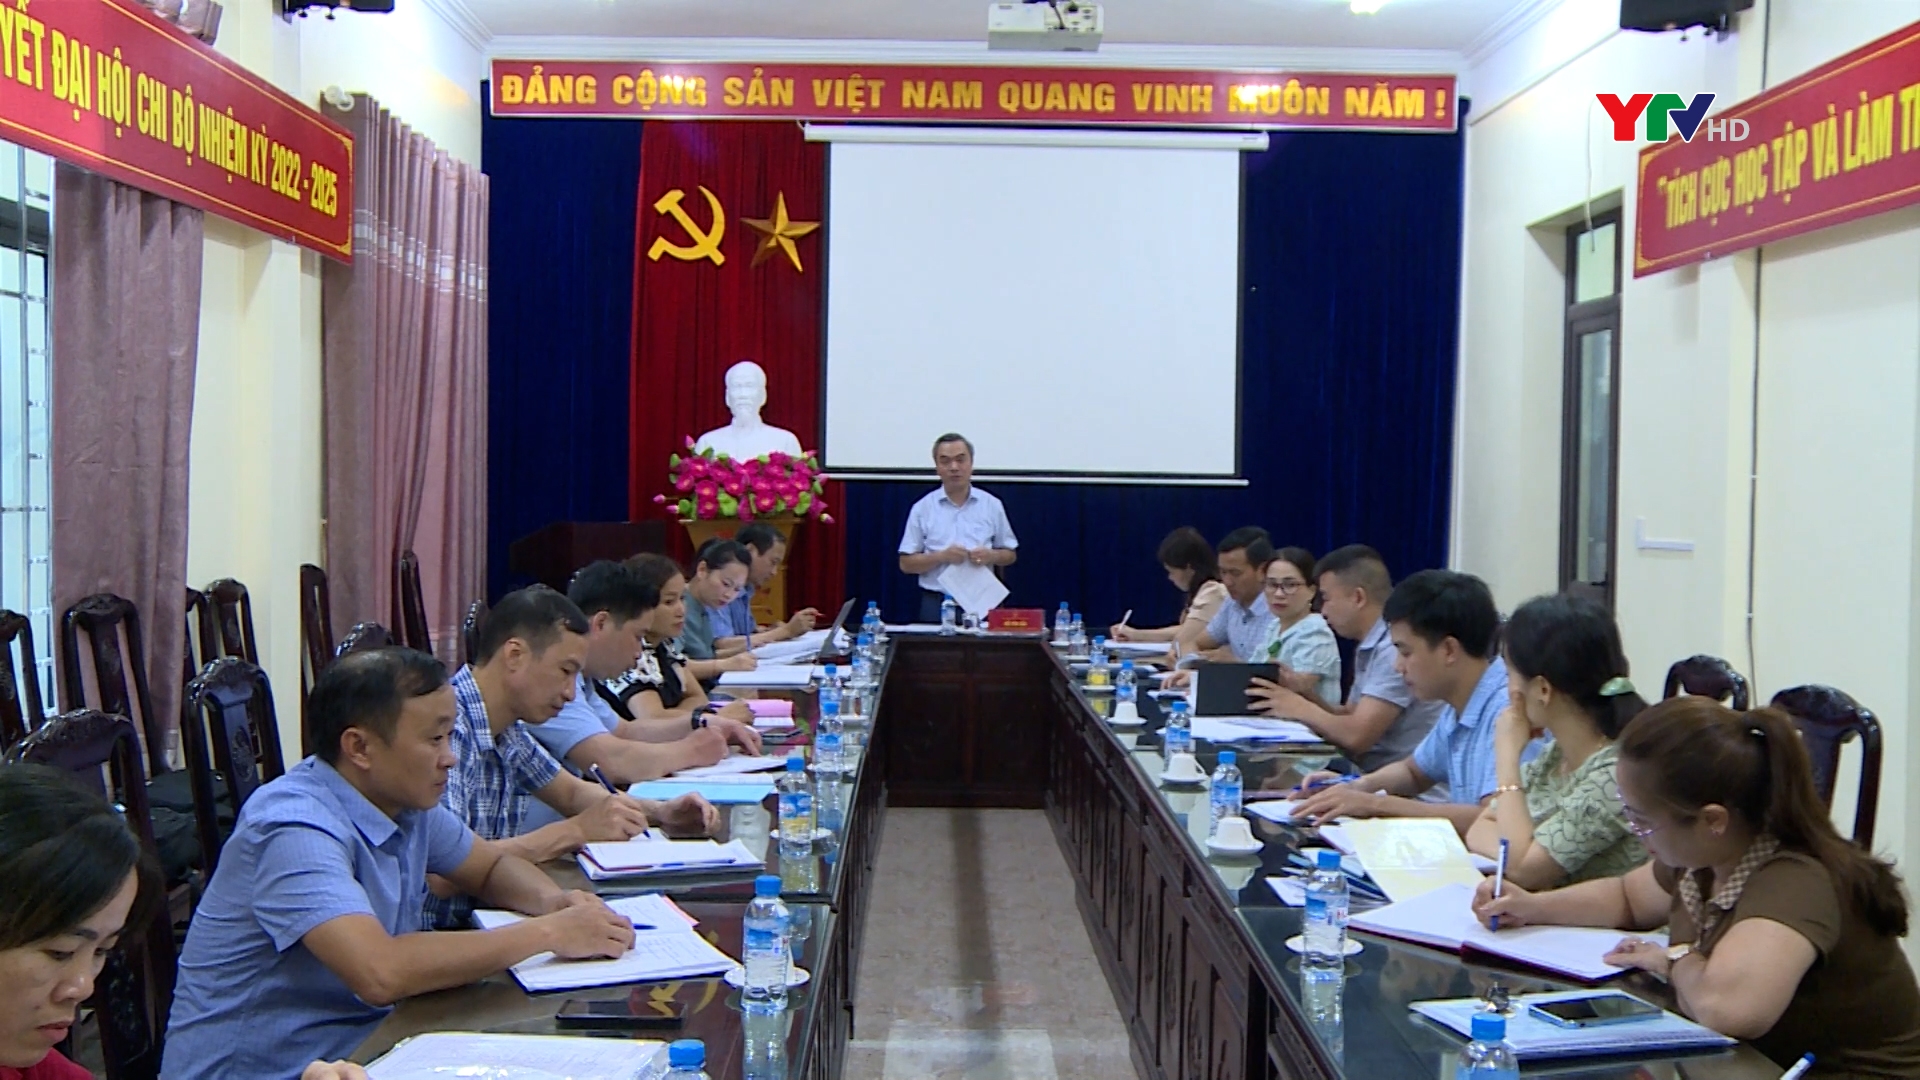 HĐND tỉnh Yên Bái giám sát việc thực hiện quy định các khoản thu dịch vụ đối với cơ sở giáo dục công lập trên địa bàn huyện Lục Yên